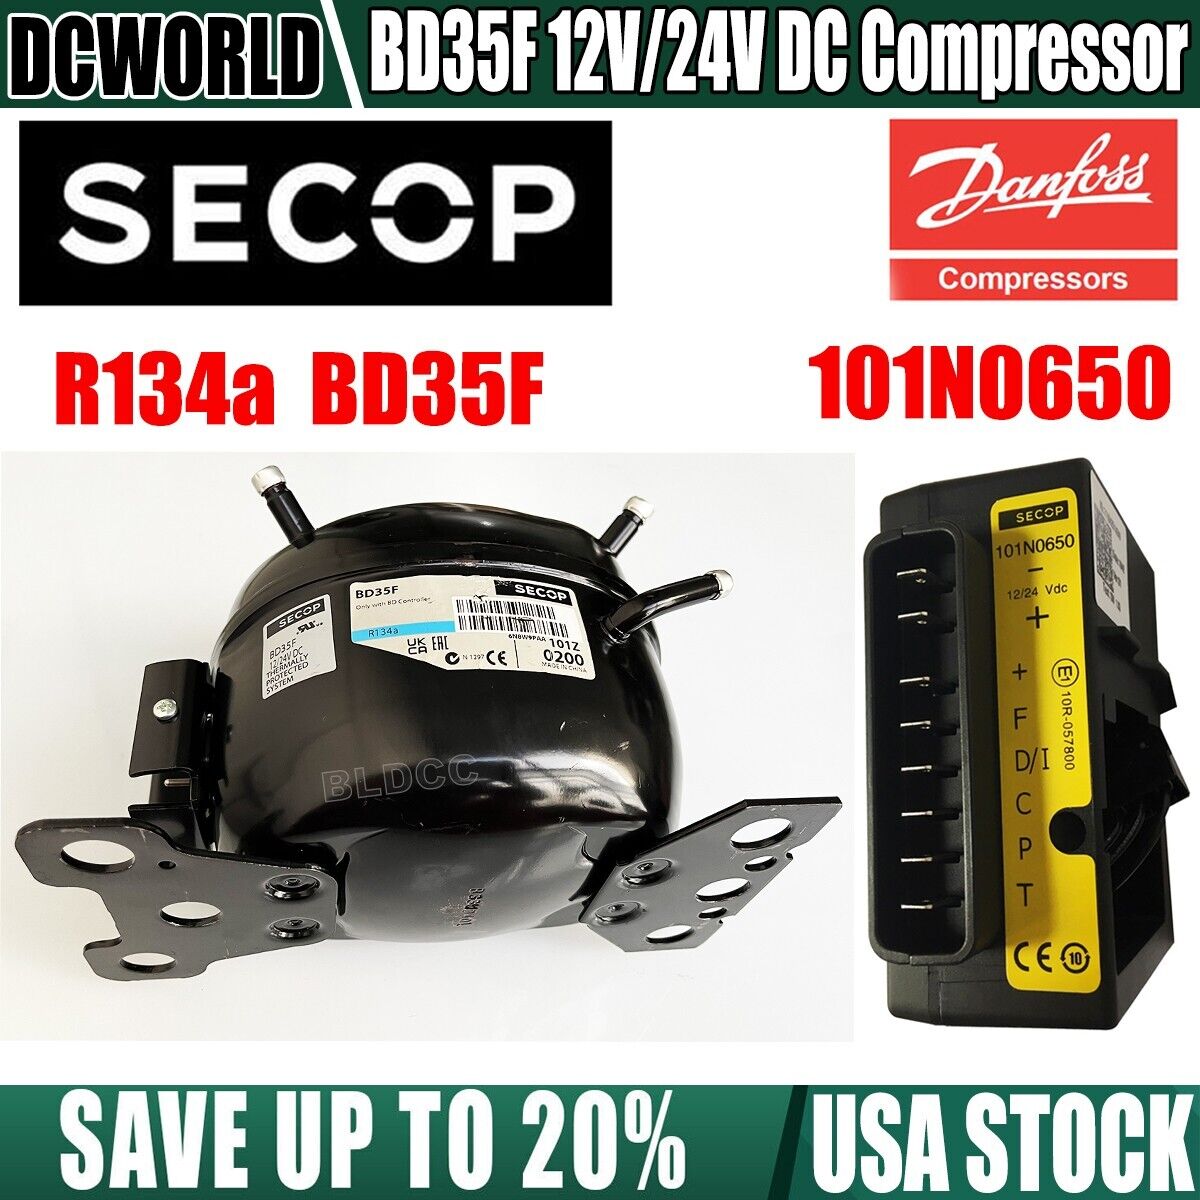 Danfoss/Secop BD35F Compressor DC 12V/24V 101N0650 Controller Fridge/Freezer Kit